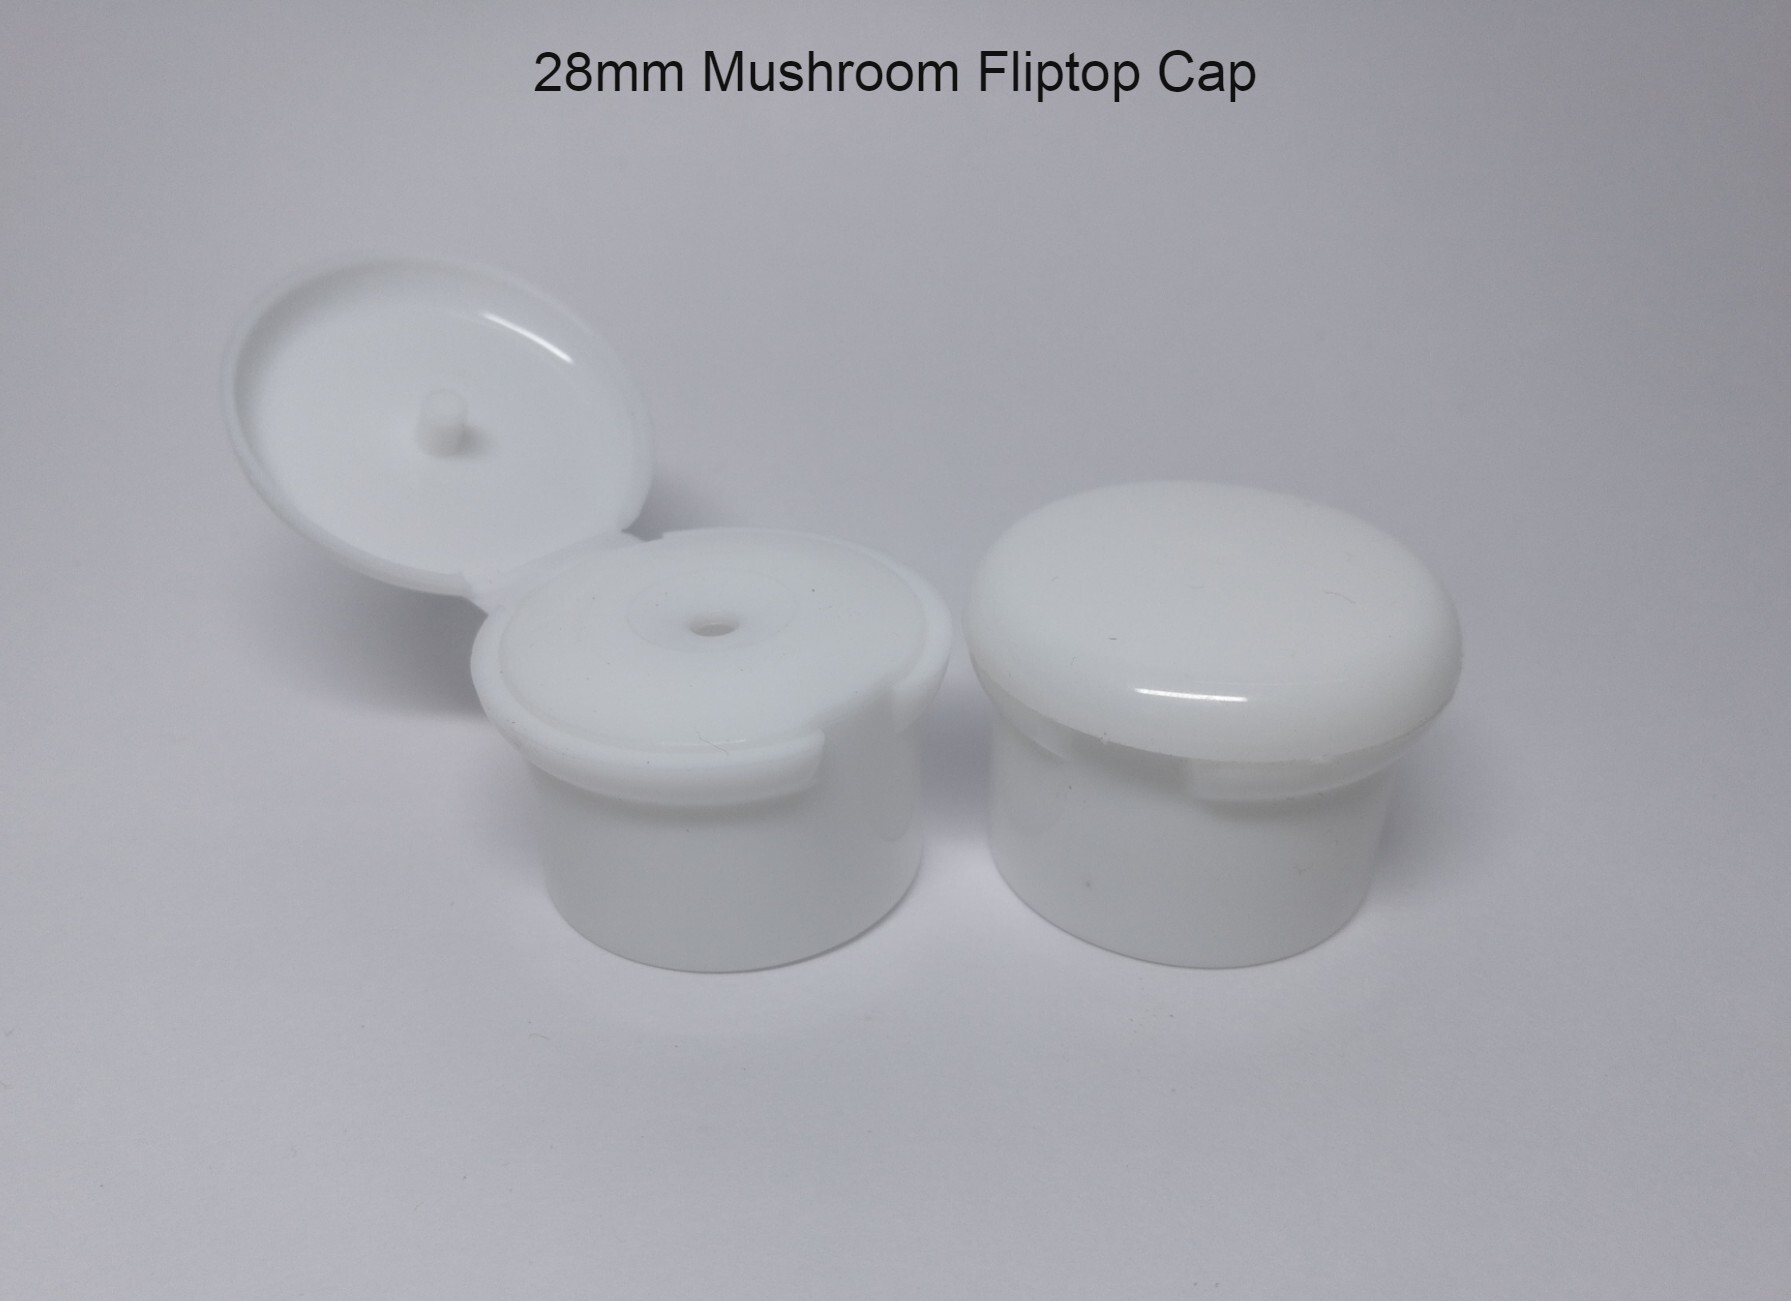 Mushroom Fliptop Cap